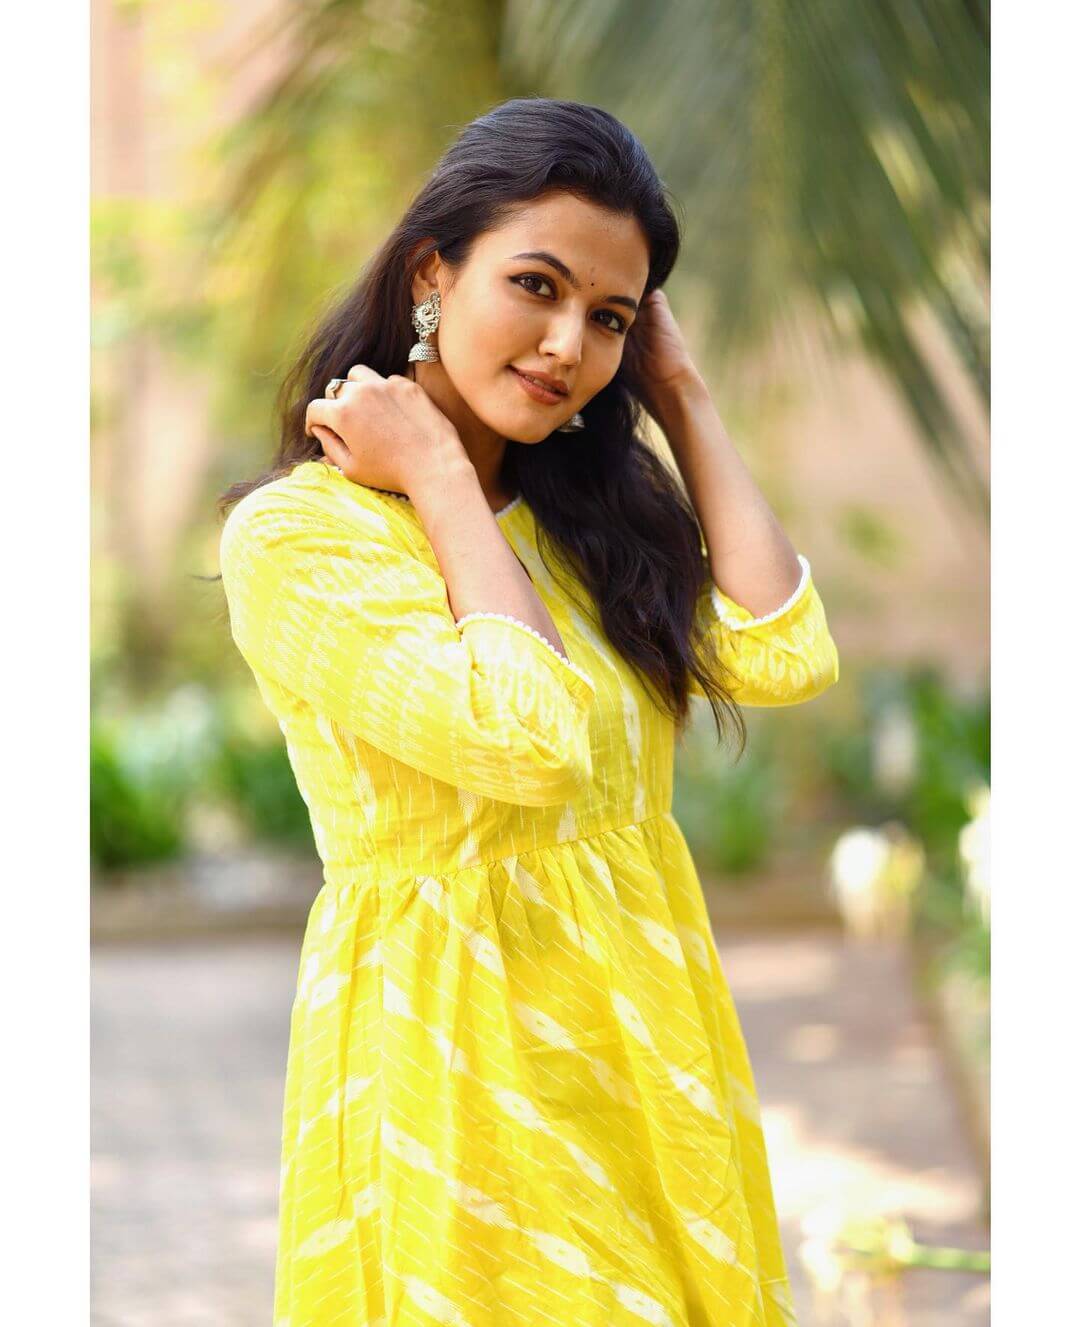 Actress Aparna Das in yellow salwar